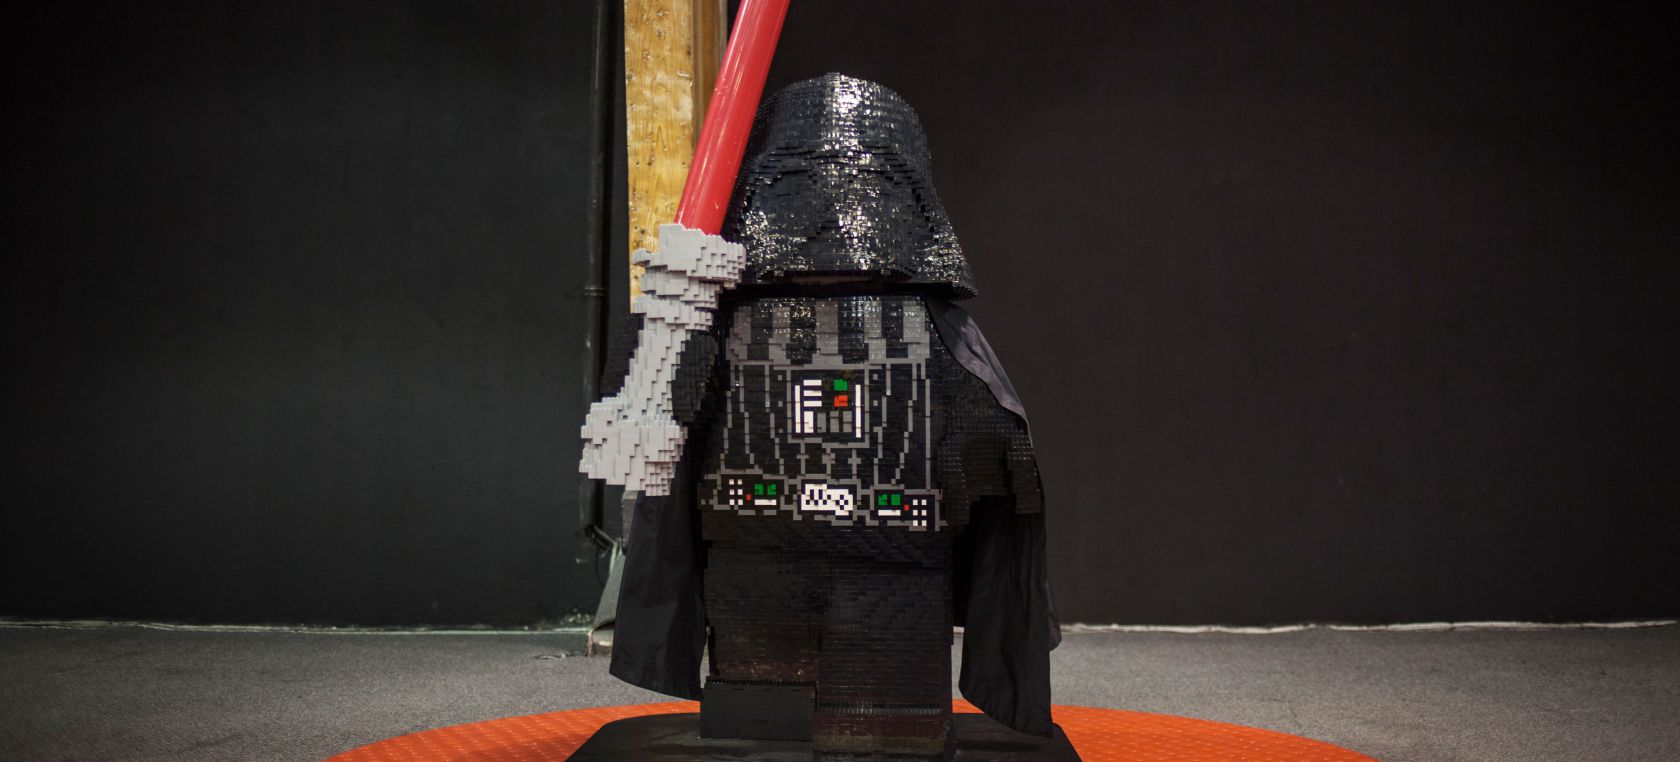 Bèlgica permet tenir un “company/a” durant el nou confinament i arriba l’especial de Nadal ‘Lego Star Wars’